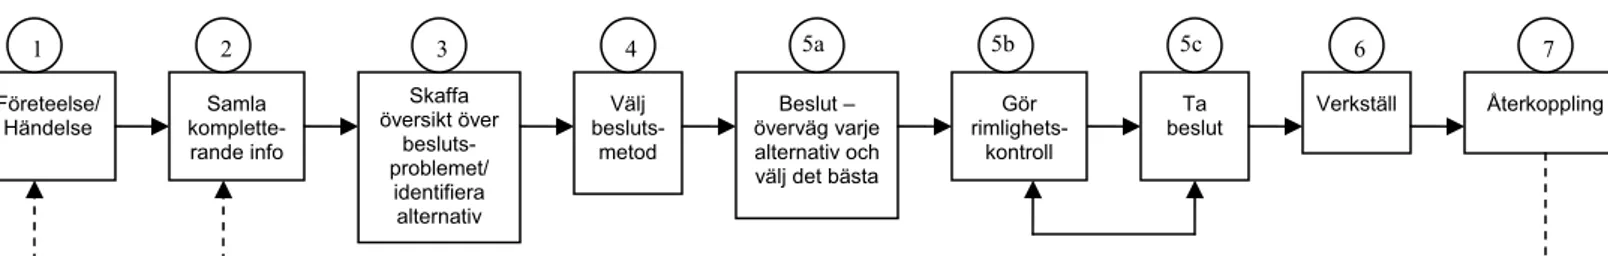 Figur 4.4. Modell av beslutsprocessen som använts i analysen.  